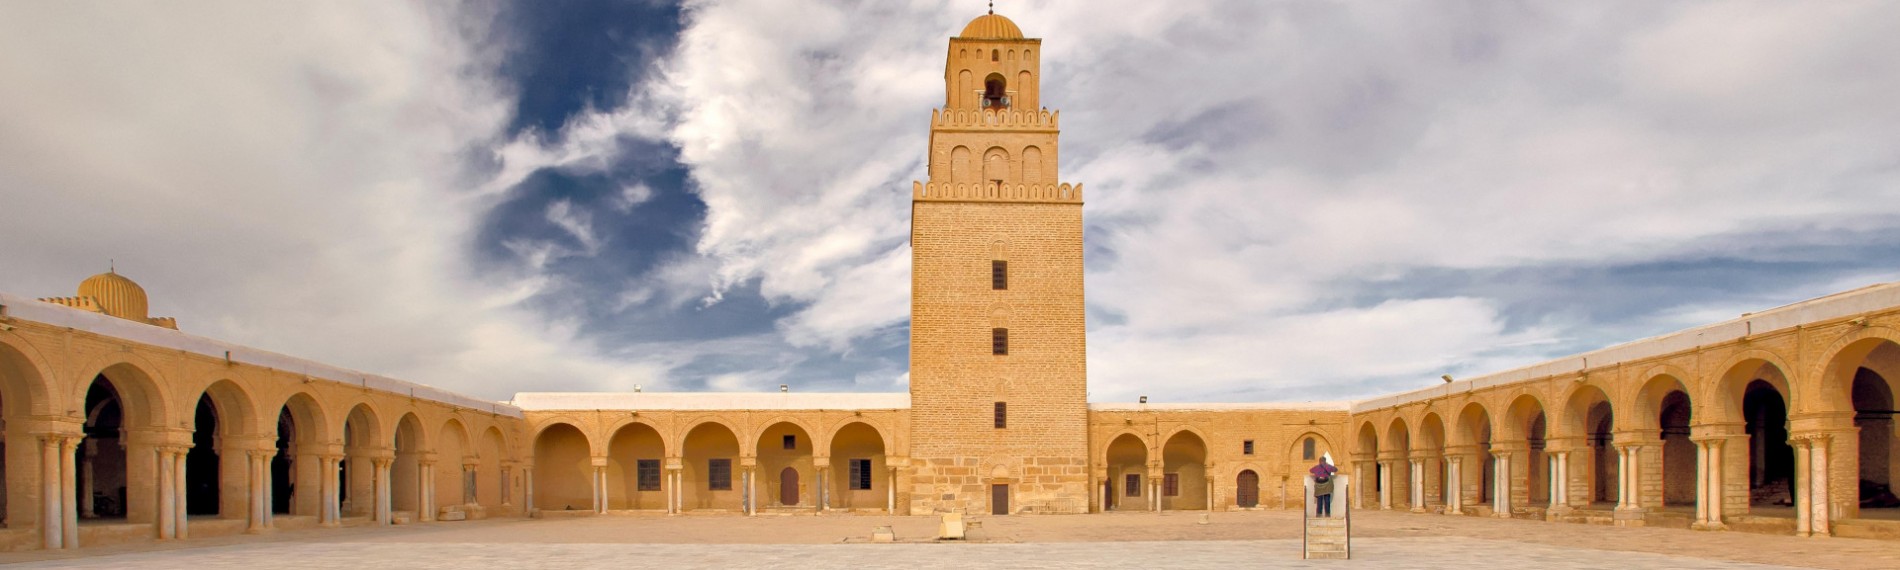 Tunisia Central Mosquee